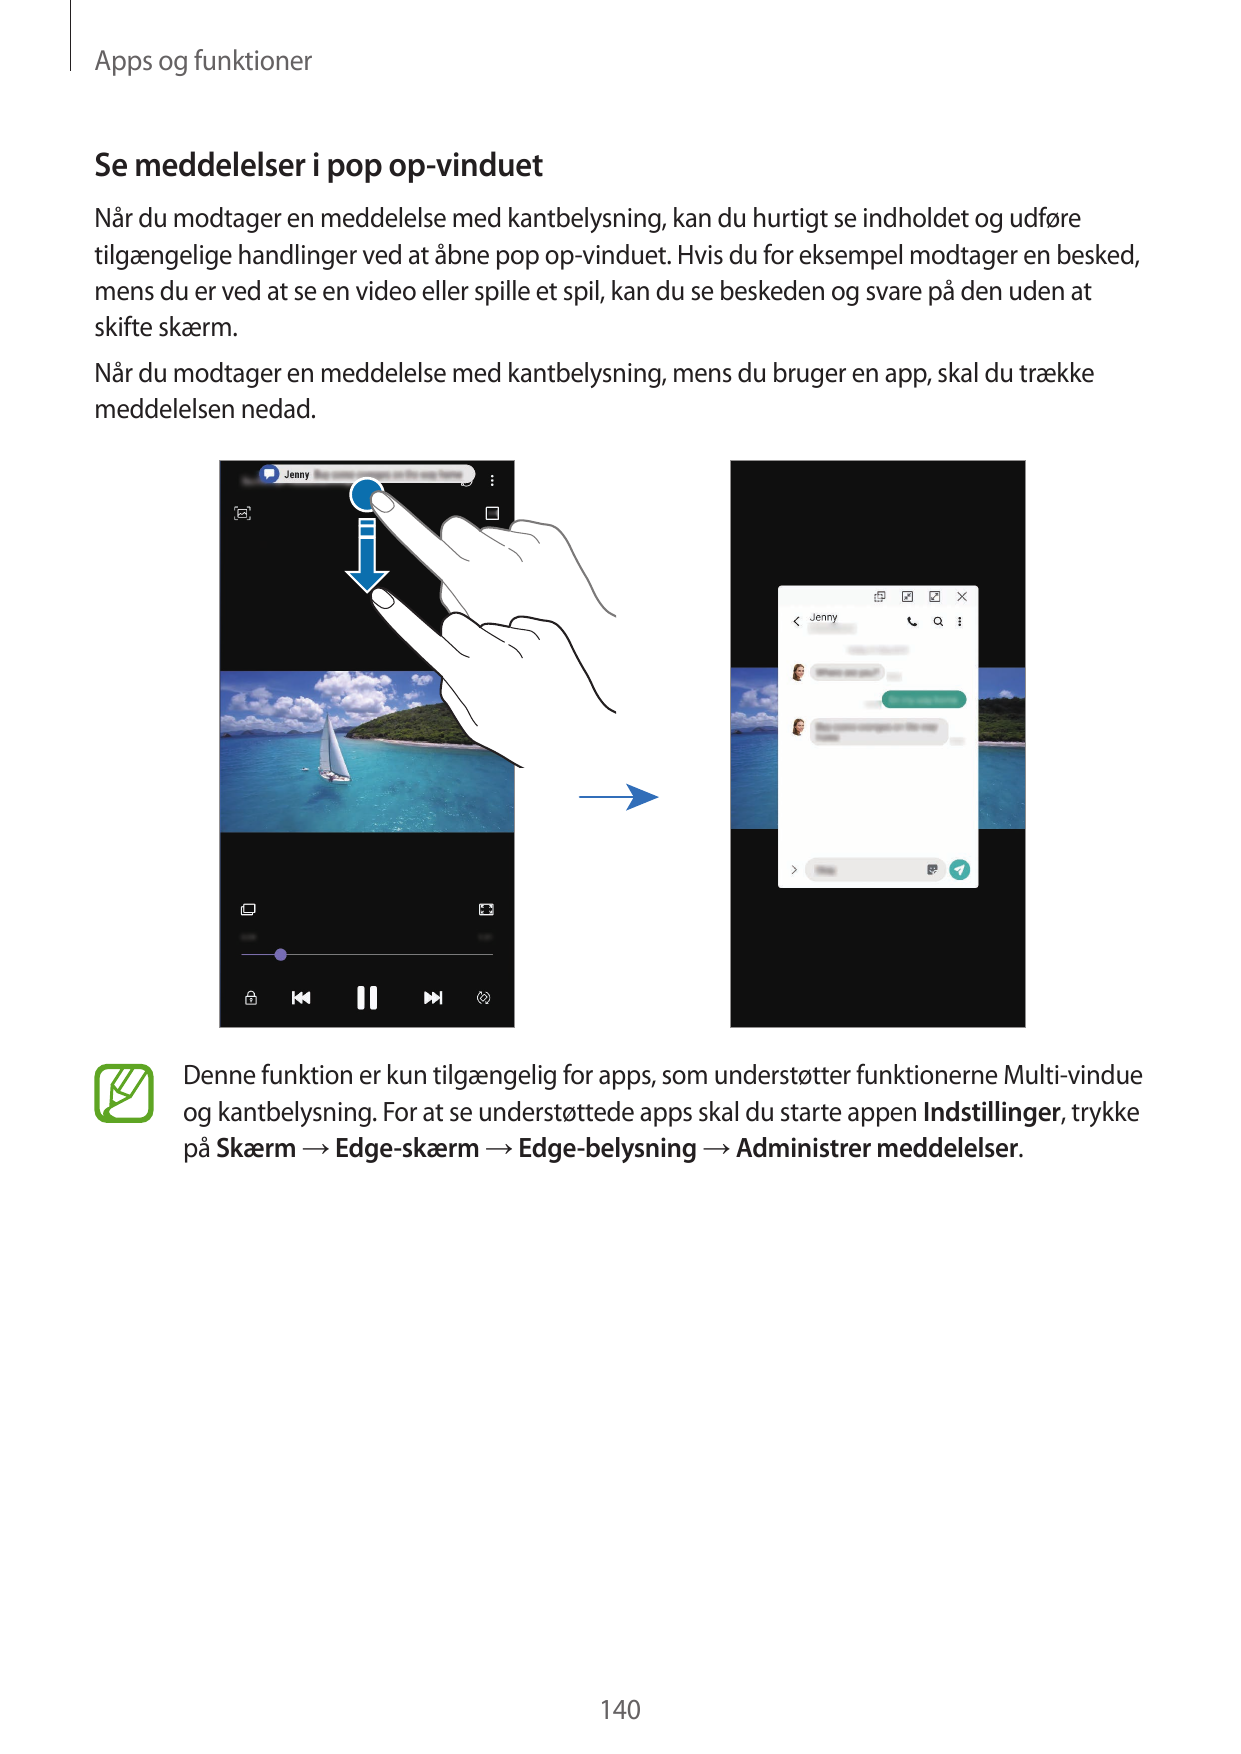 Apps og funktionerSe meddelelser i pop op-vinduetNår du modtager en meddelelse med kantbelysning, kan du hurtigt se indholdet og